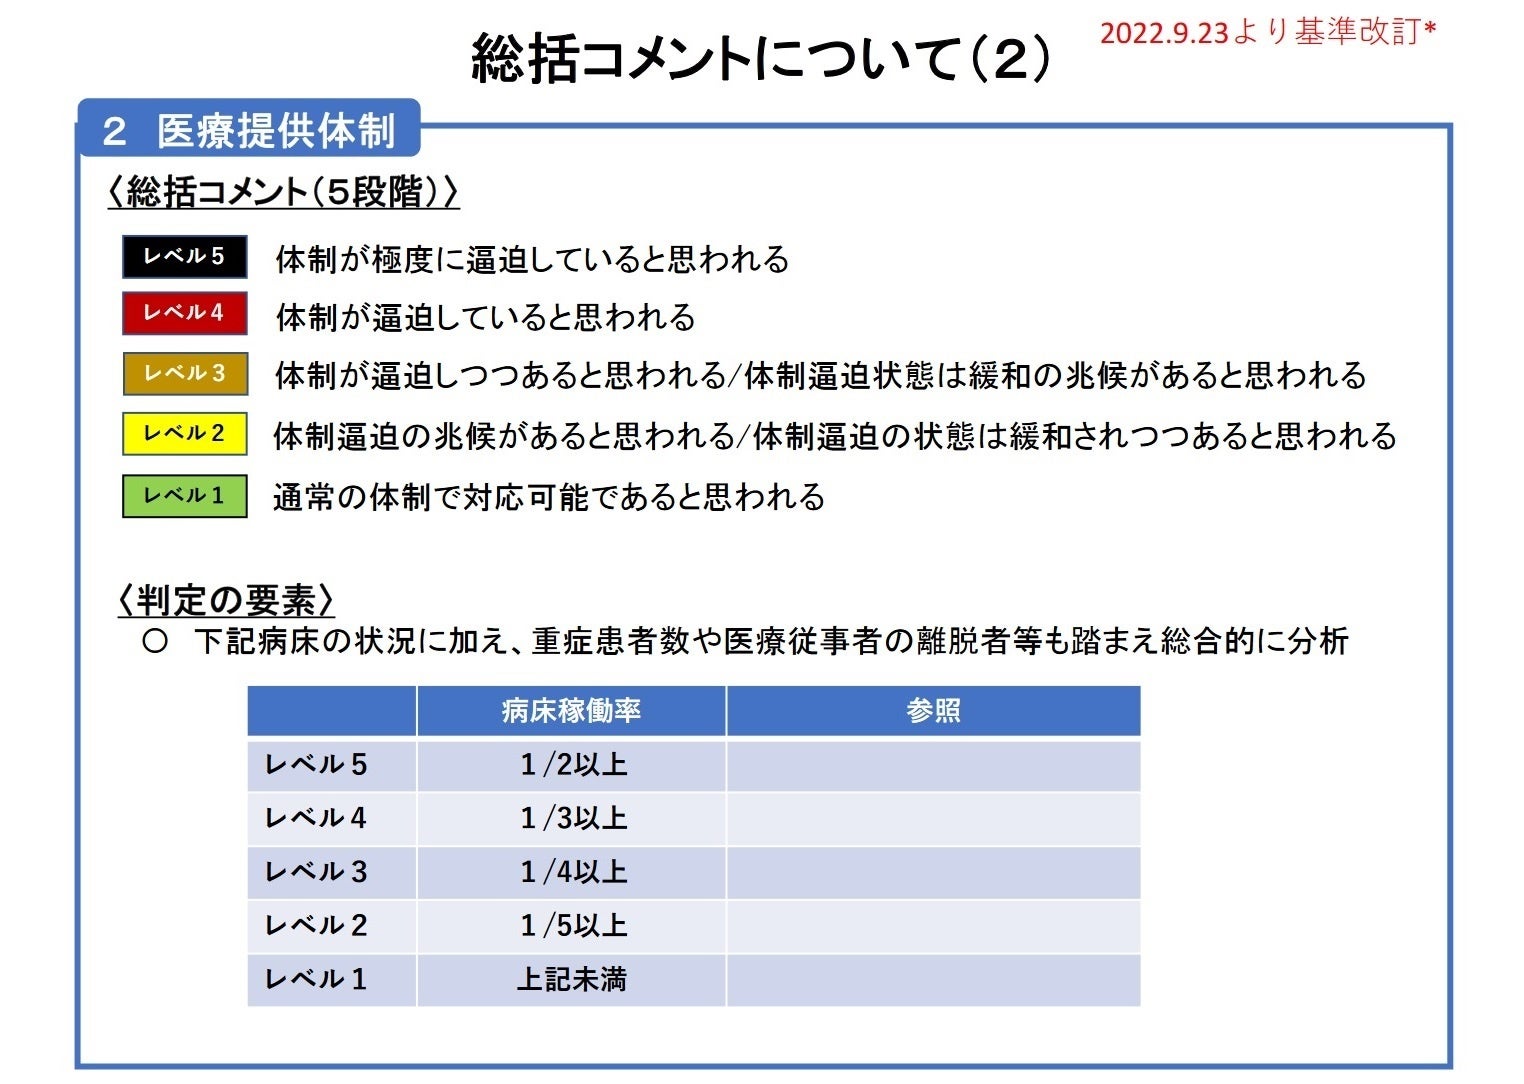 【岡山大学】岡山県内の感染状況・医療提供体制の分析について（2023年7月7日現在）